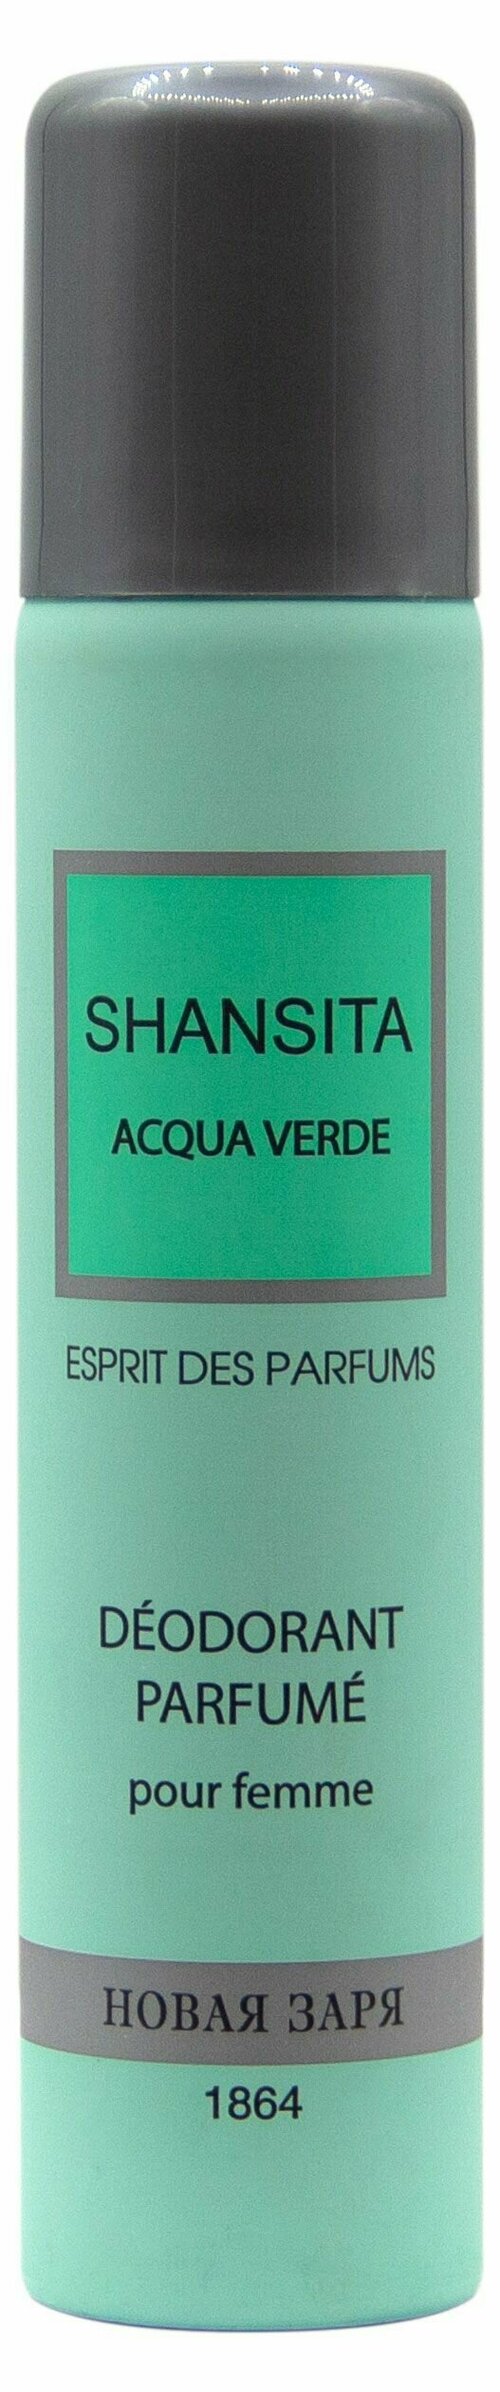 Дезодорант парфюмированный для женщин Новая Заря Дух духов Шансита свежая вода Shansita Acqua verde, 75 мл, 4 шт